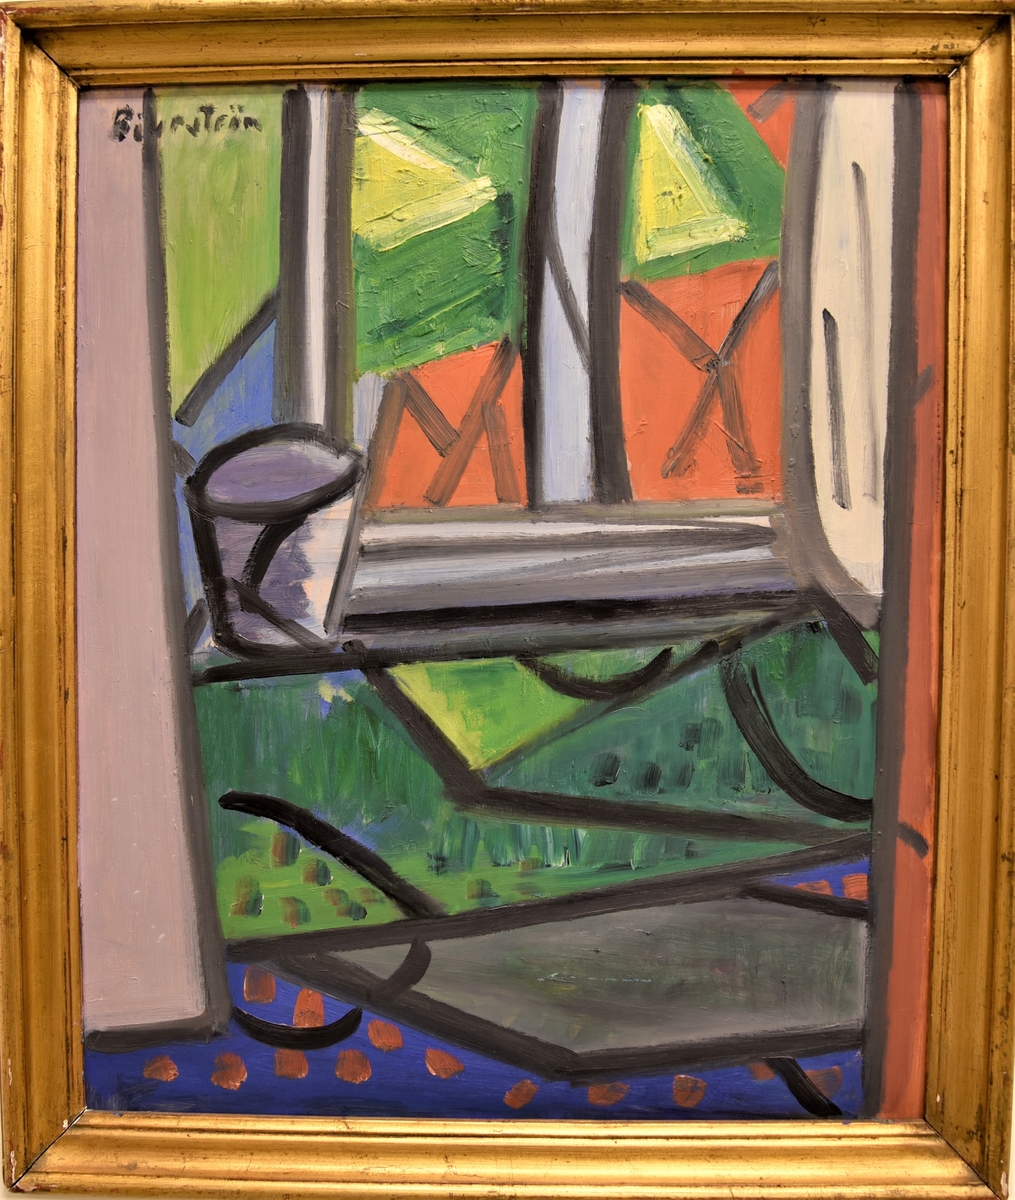 Abstrakt målning av en fönstervy med detaljer i rött, grönt, gult, blått, violett och svart.